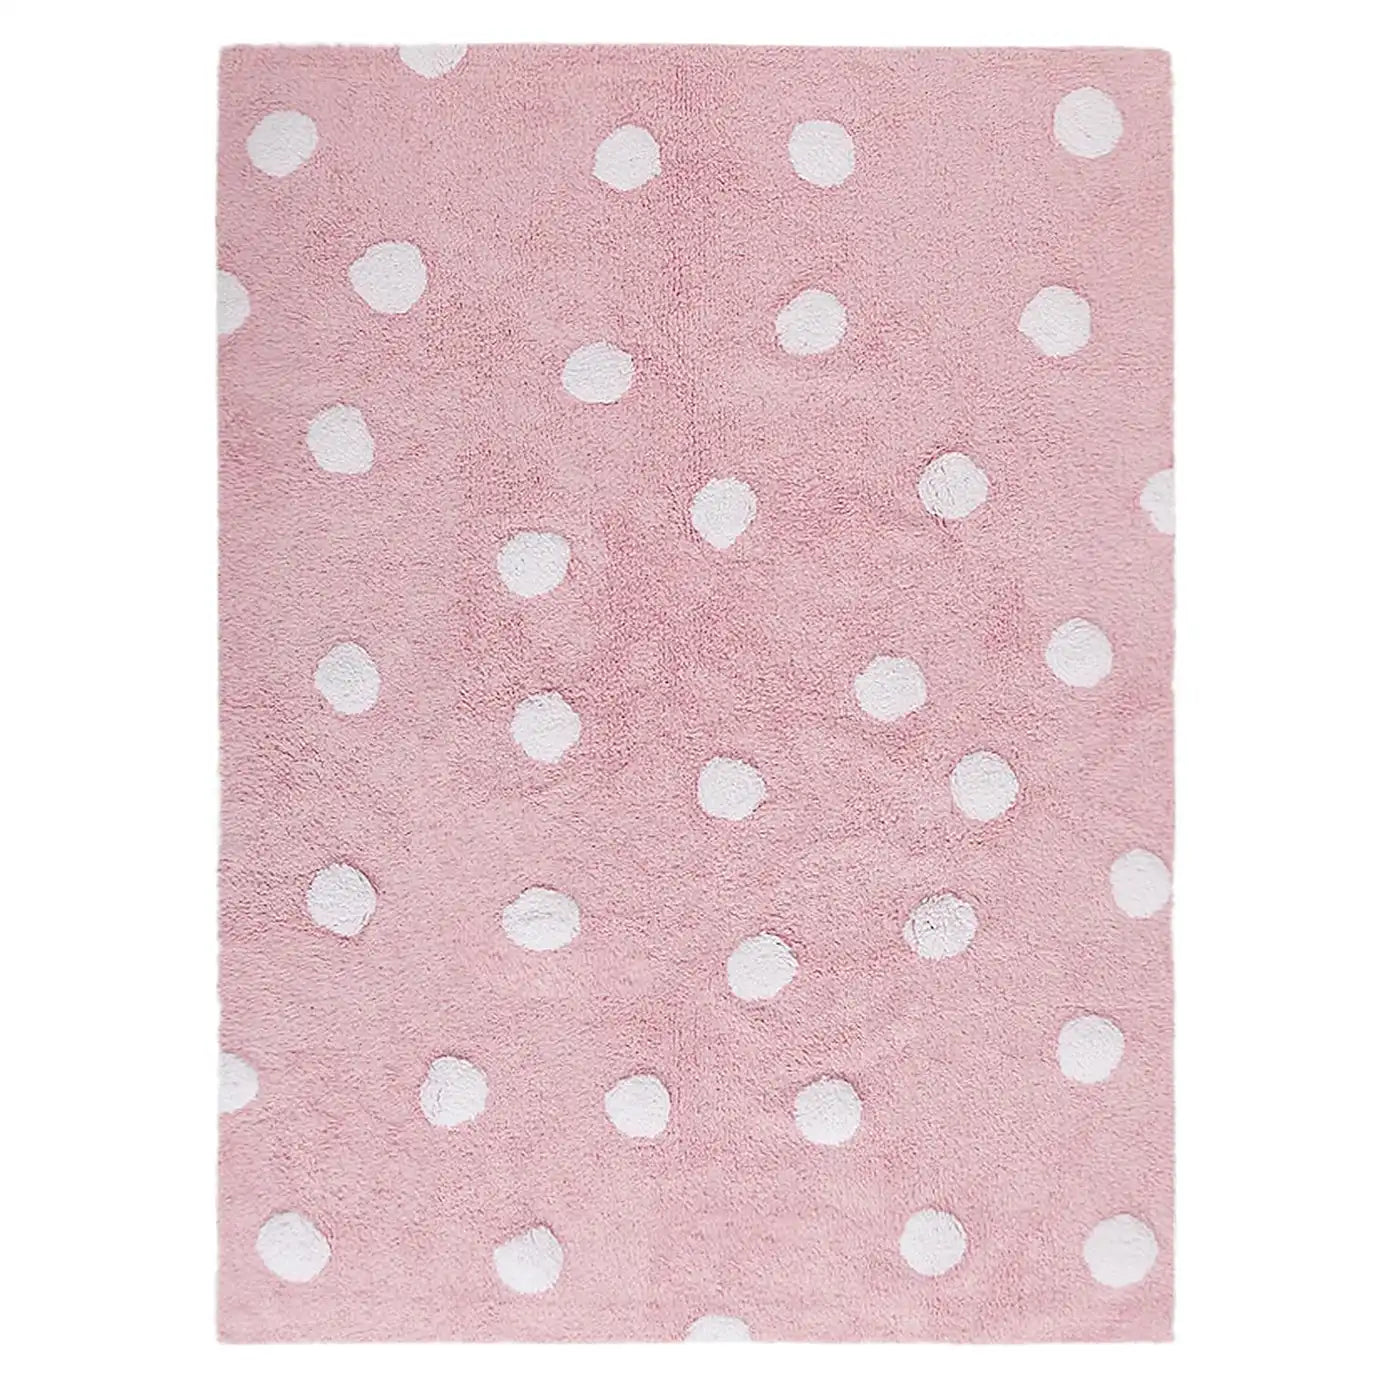 Lorena Canals Polka Dots Washable Rug - Pink (POLKA DOTS Collection)